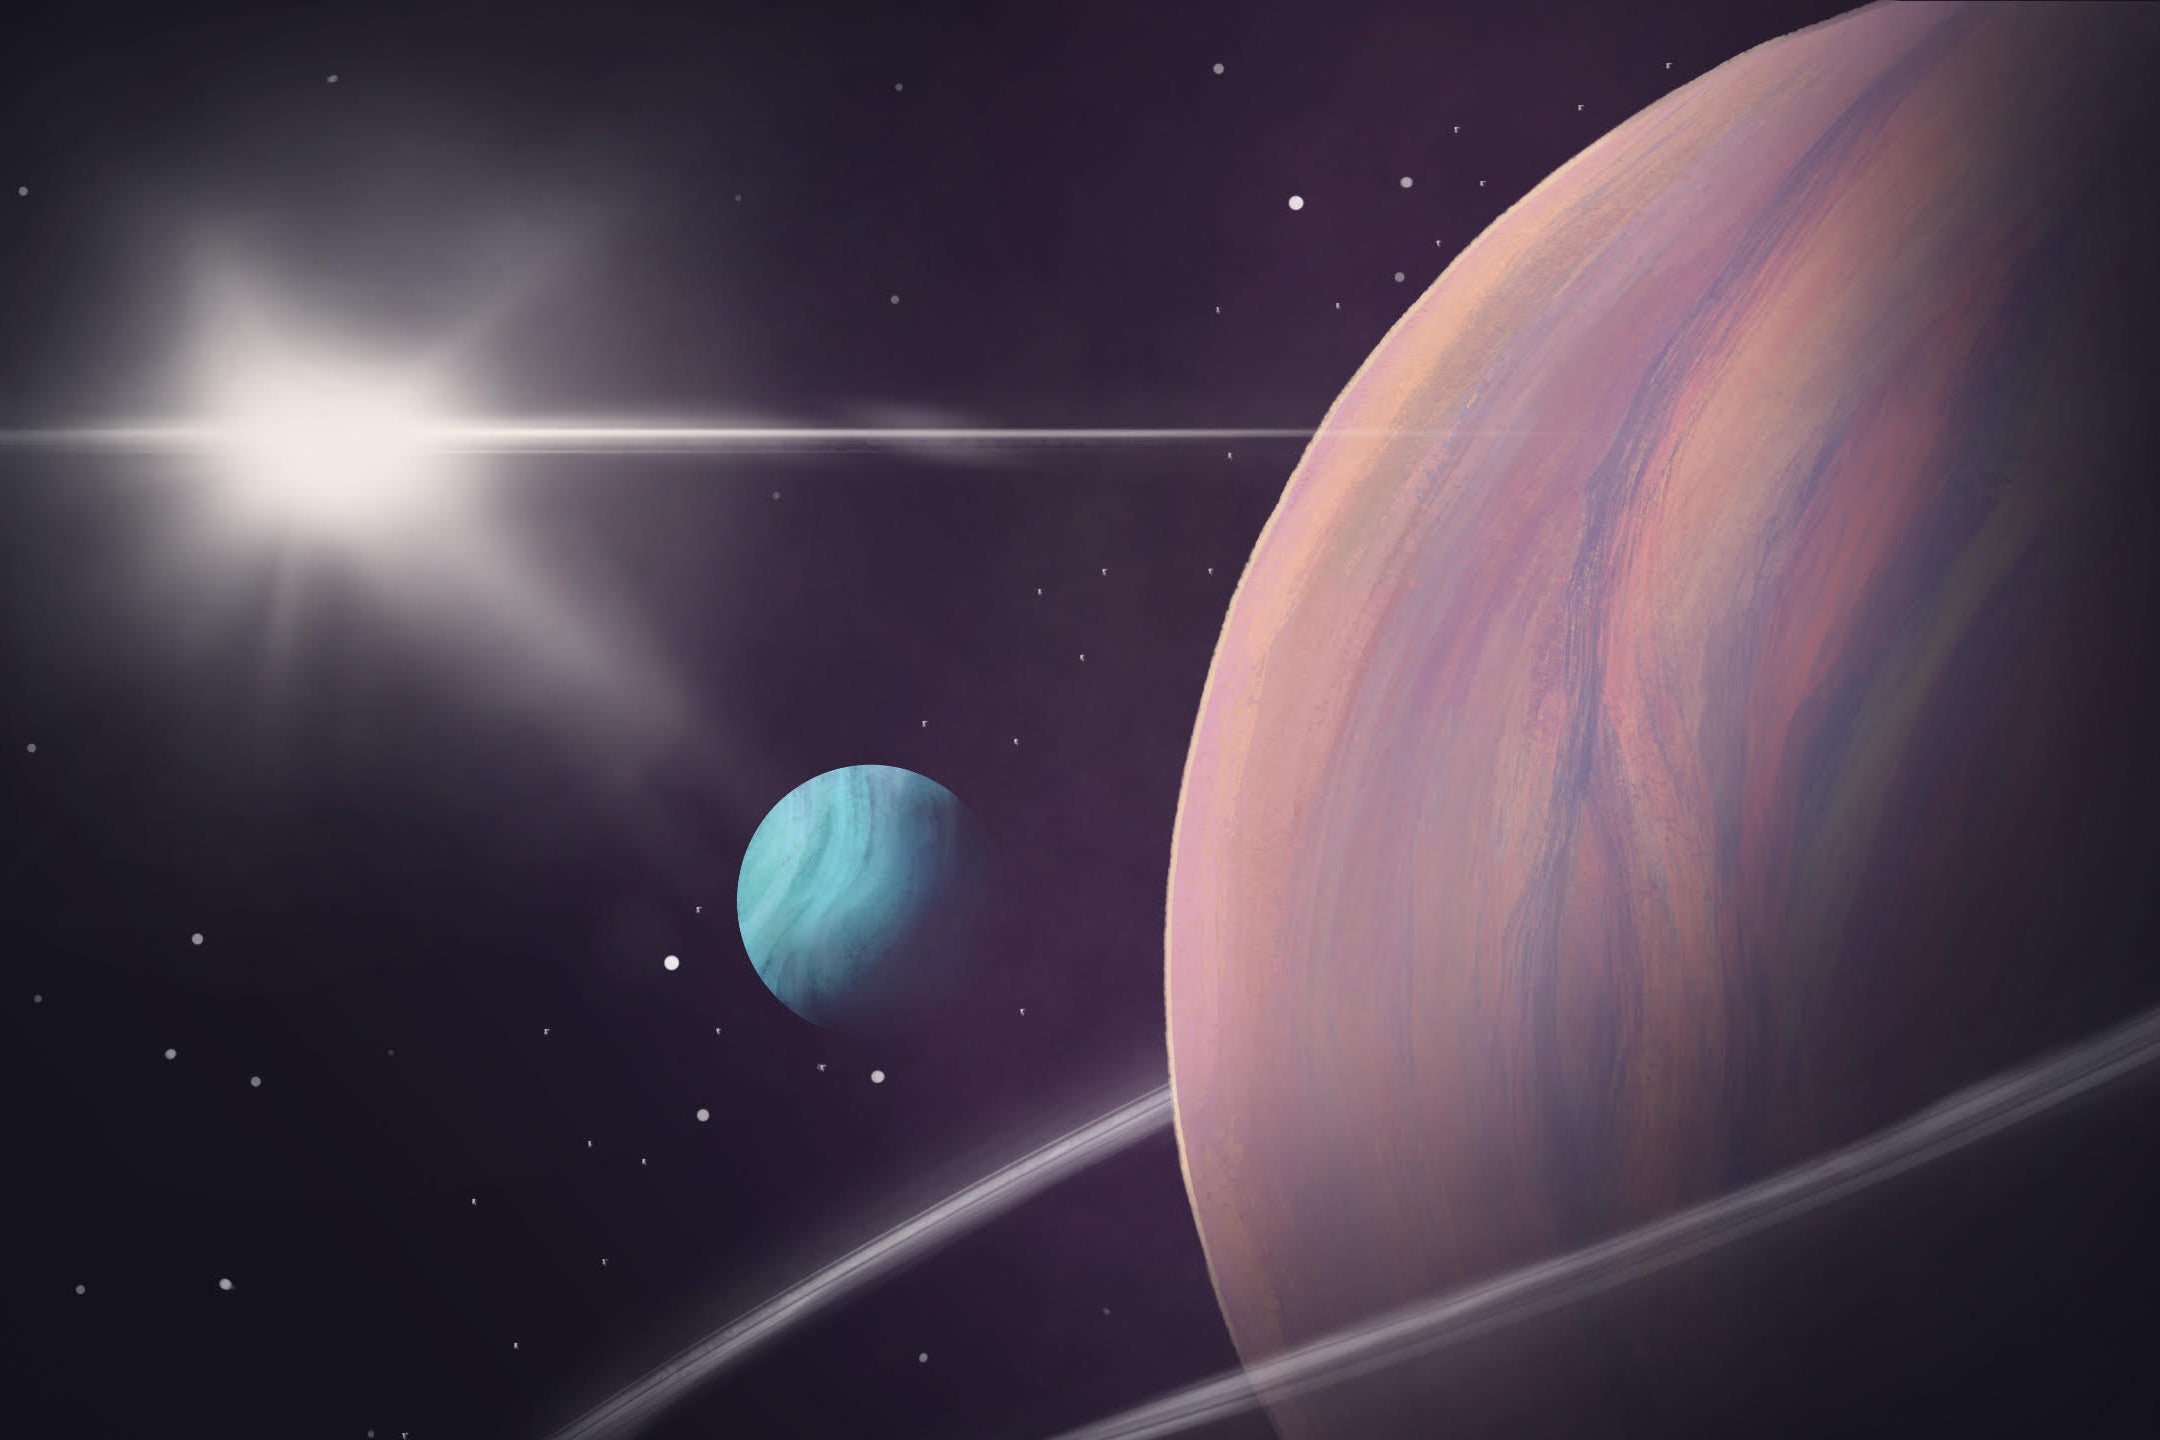 يمكن أن توجد الحياة على بعض كواكب المجموعة الشمسية كما هي الحياة على سطح الأرض